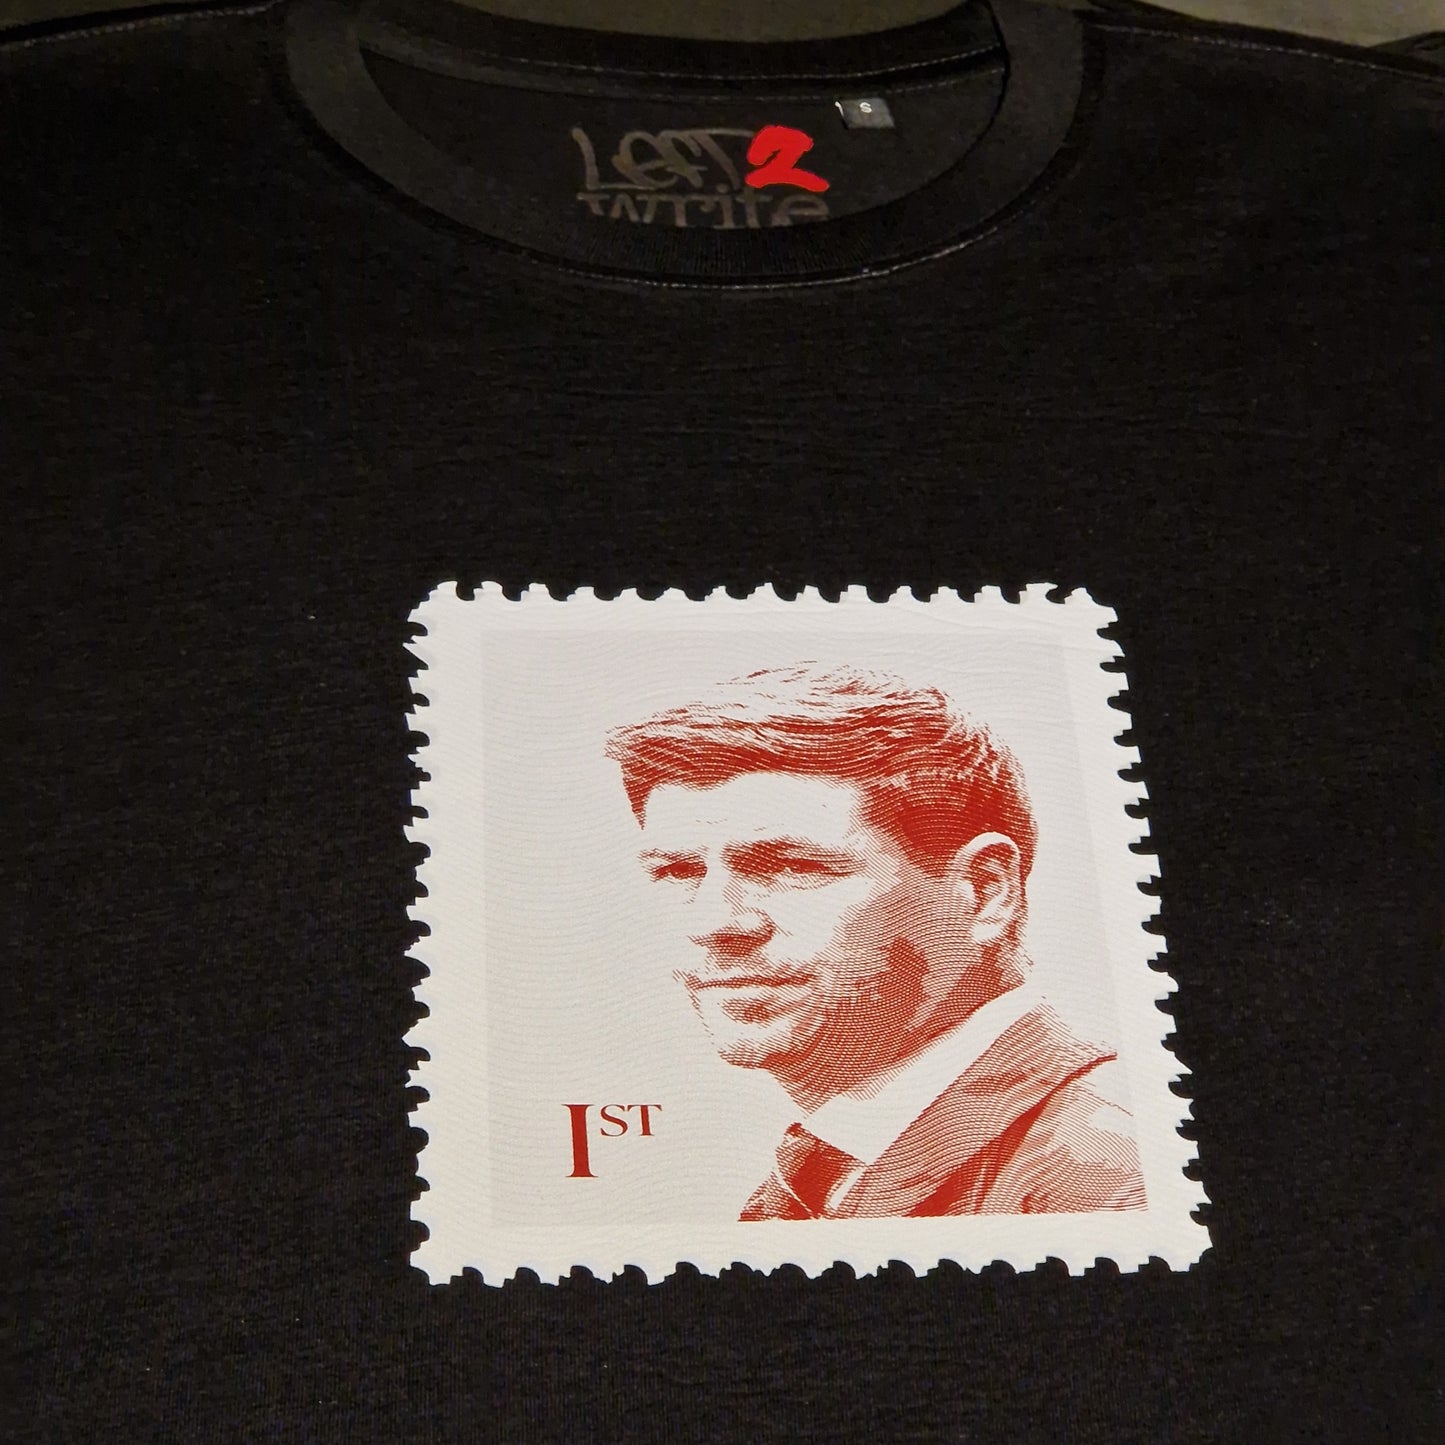 First Class Delivery - Steven Gerrard T-Shirt